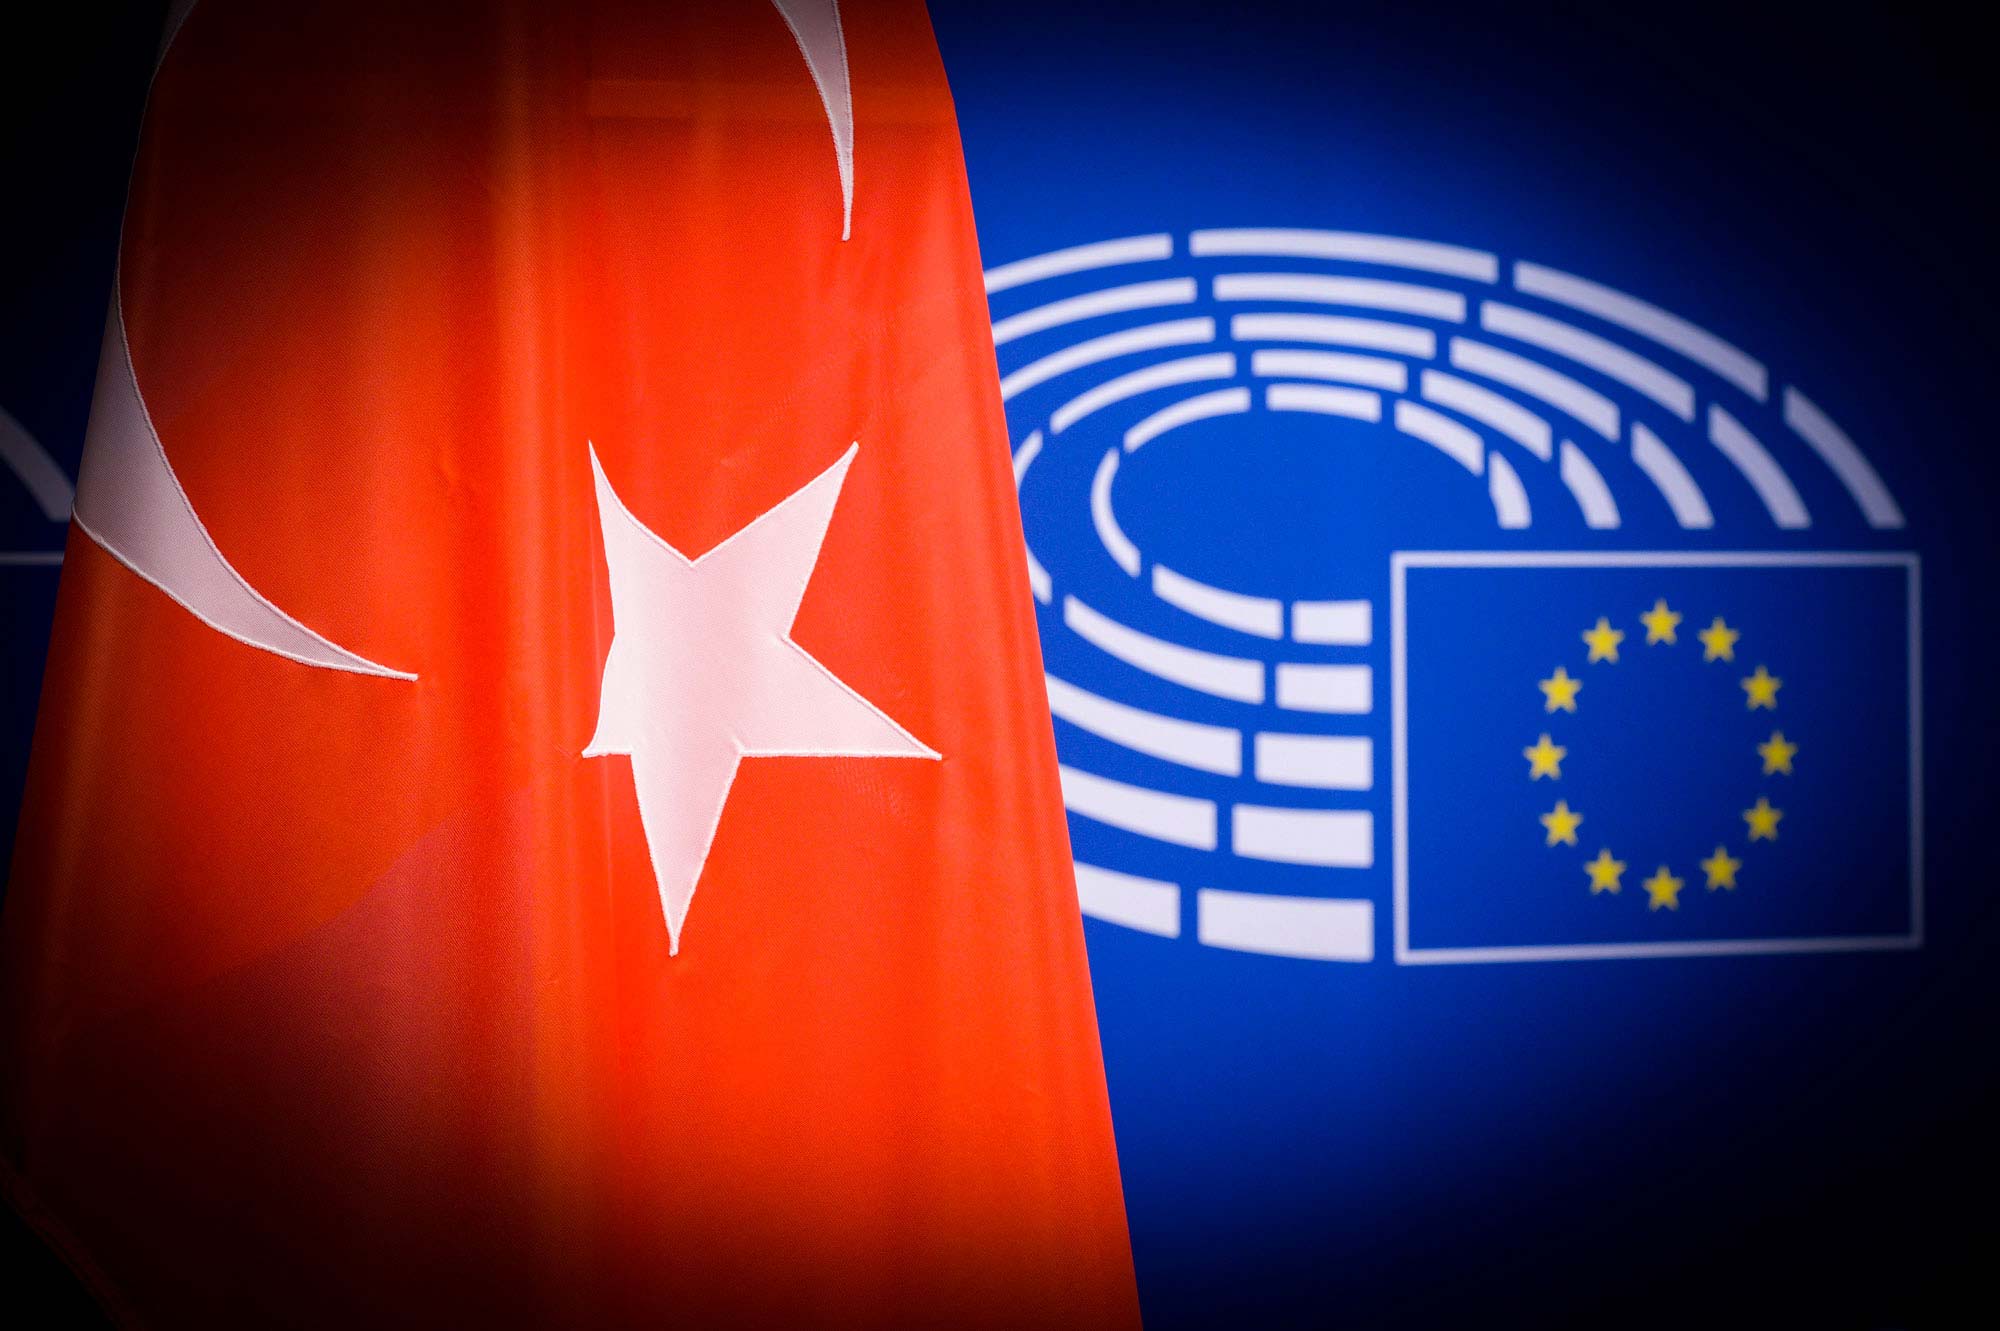 Ευρωπαϊκό χαστούκι για την Τουρκία: Παύση ενταξιακών διαπραγματεύσεων αν δεν βελτιωθεί η κατάσταση